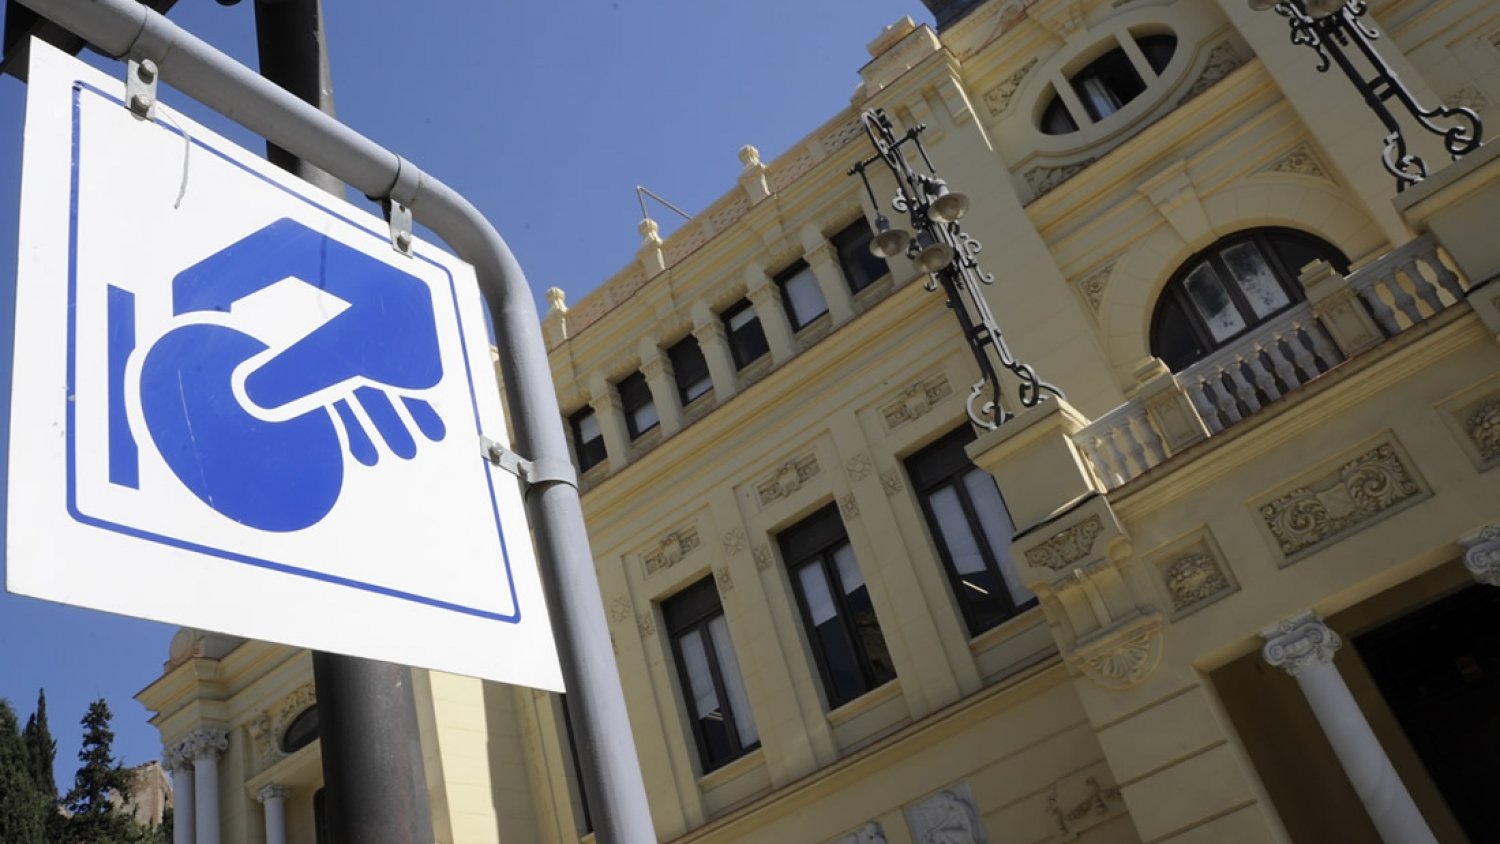 El Ayuntamiento implementa la zona azul en fase de prueba en Calle La Unión y su entorno sin la aprobación vecinal